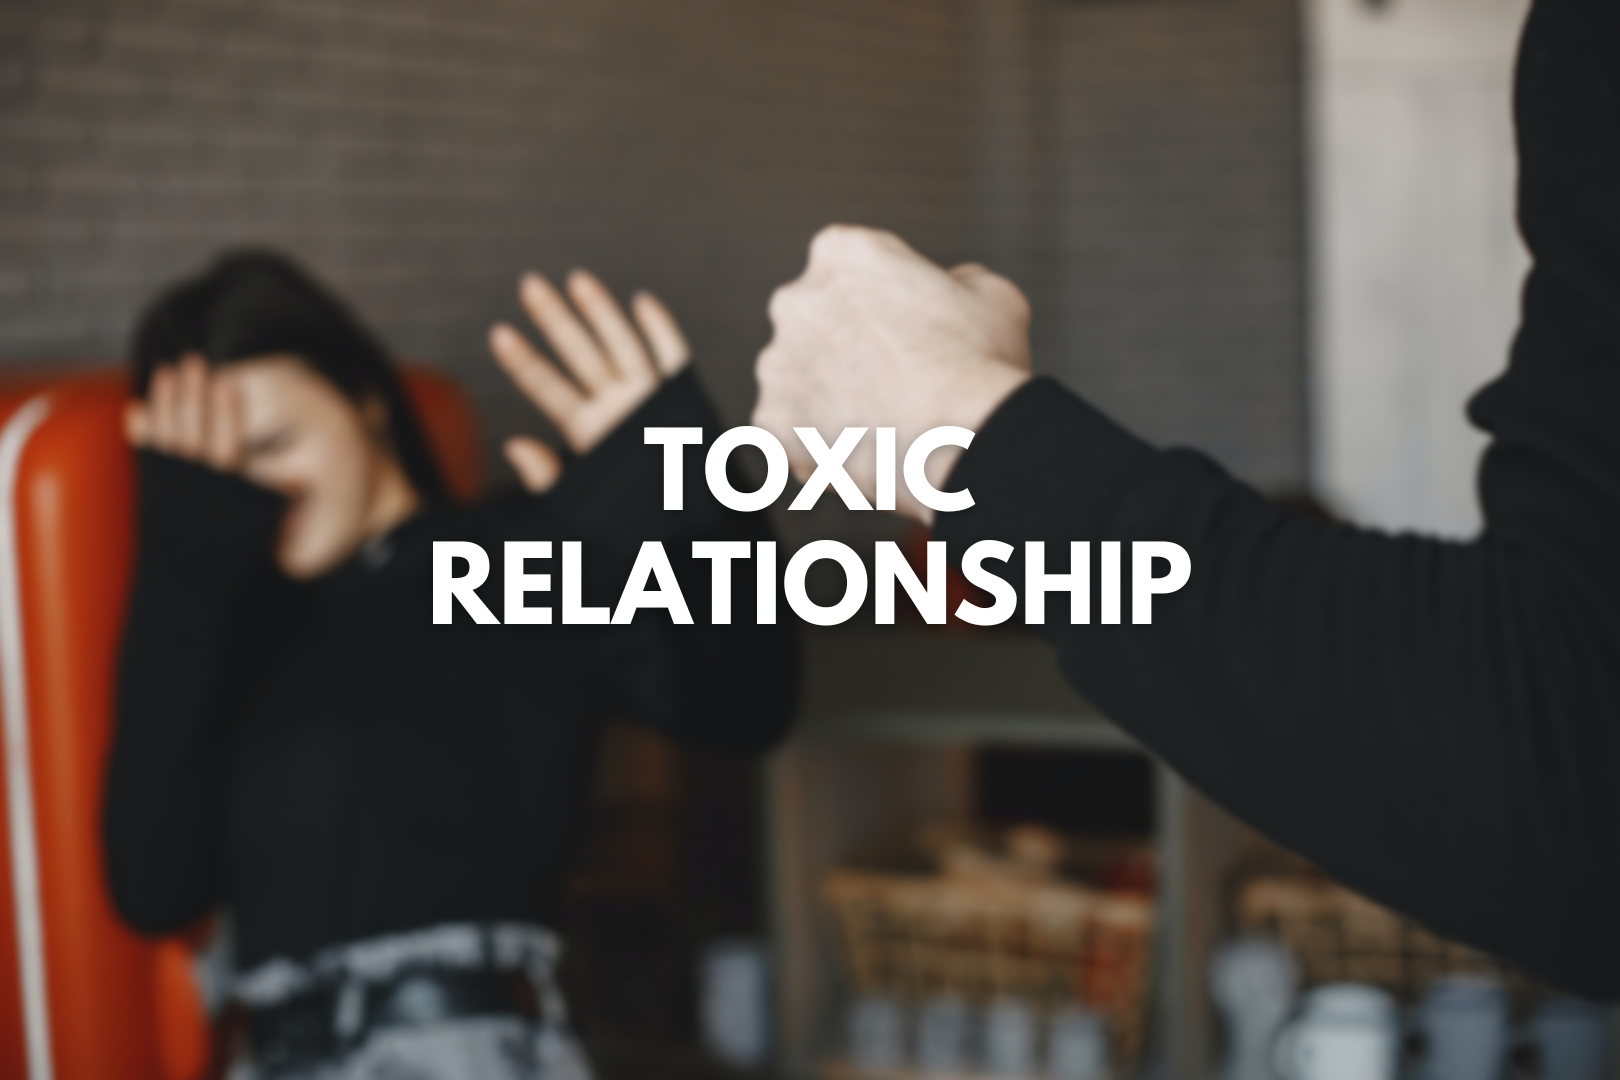 Terjebak Toxic Relationship? Cek di Sini